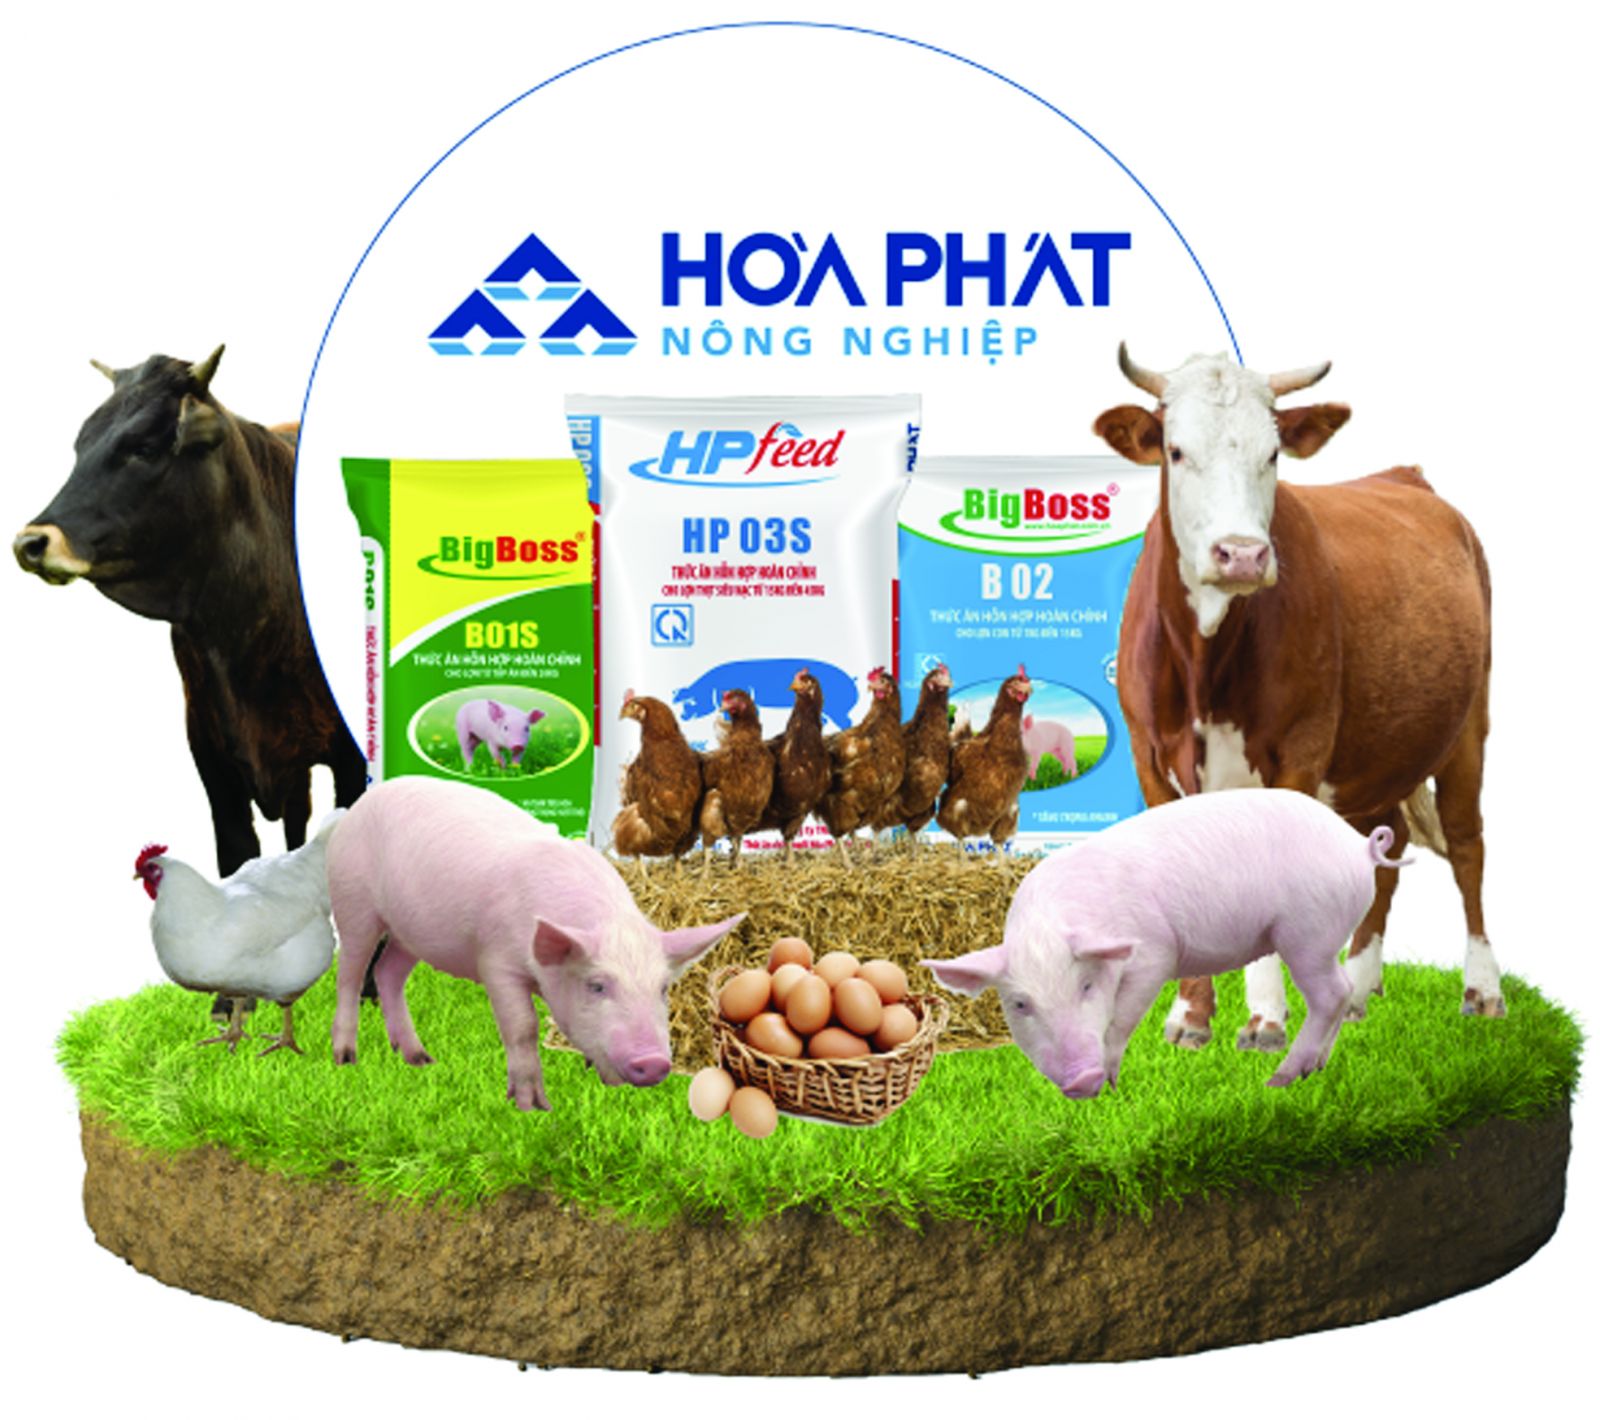 p/Các sản phẩm từ nông nghiệp chính của Hòa Phát